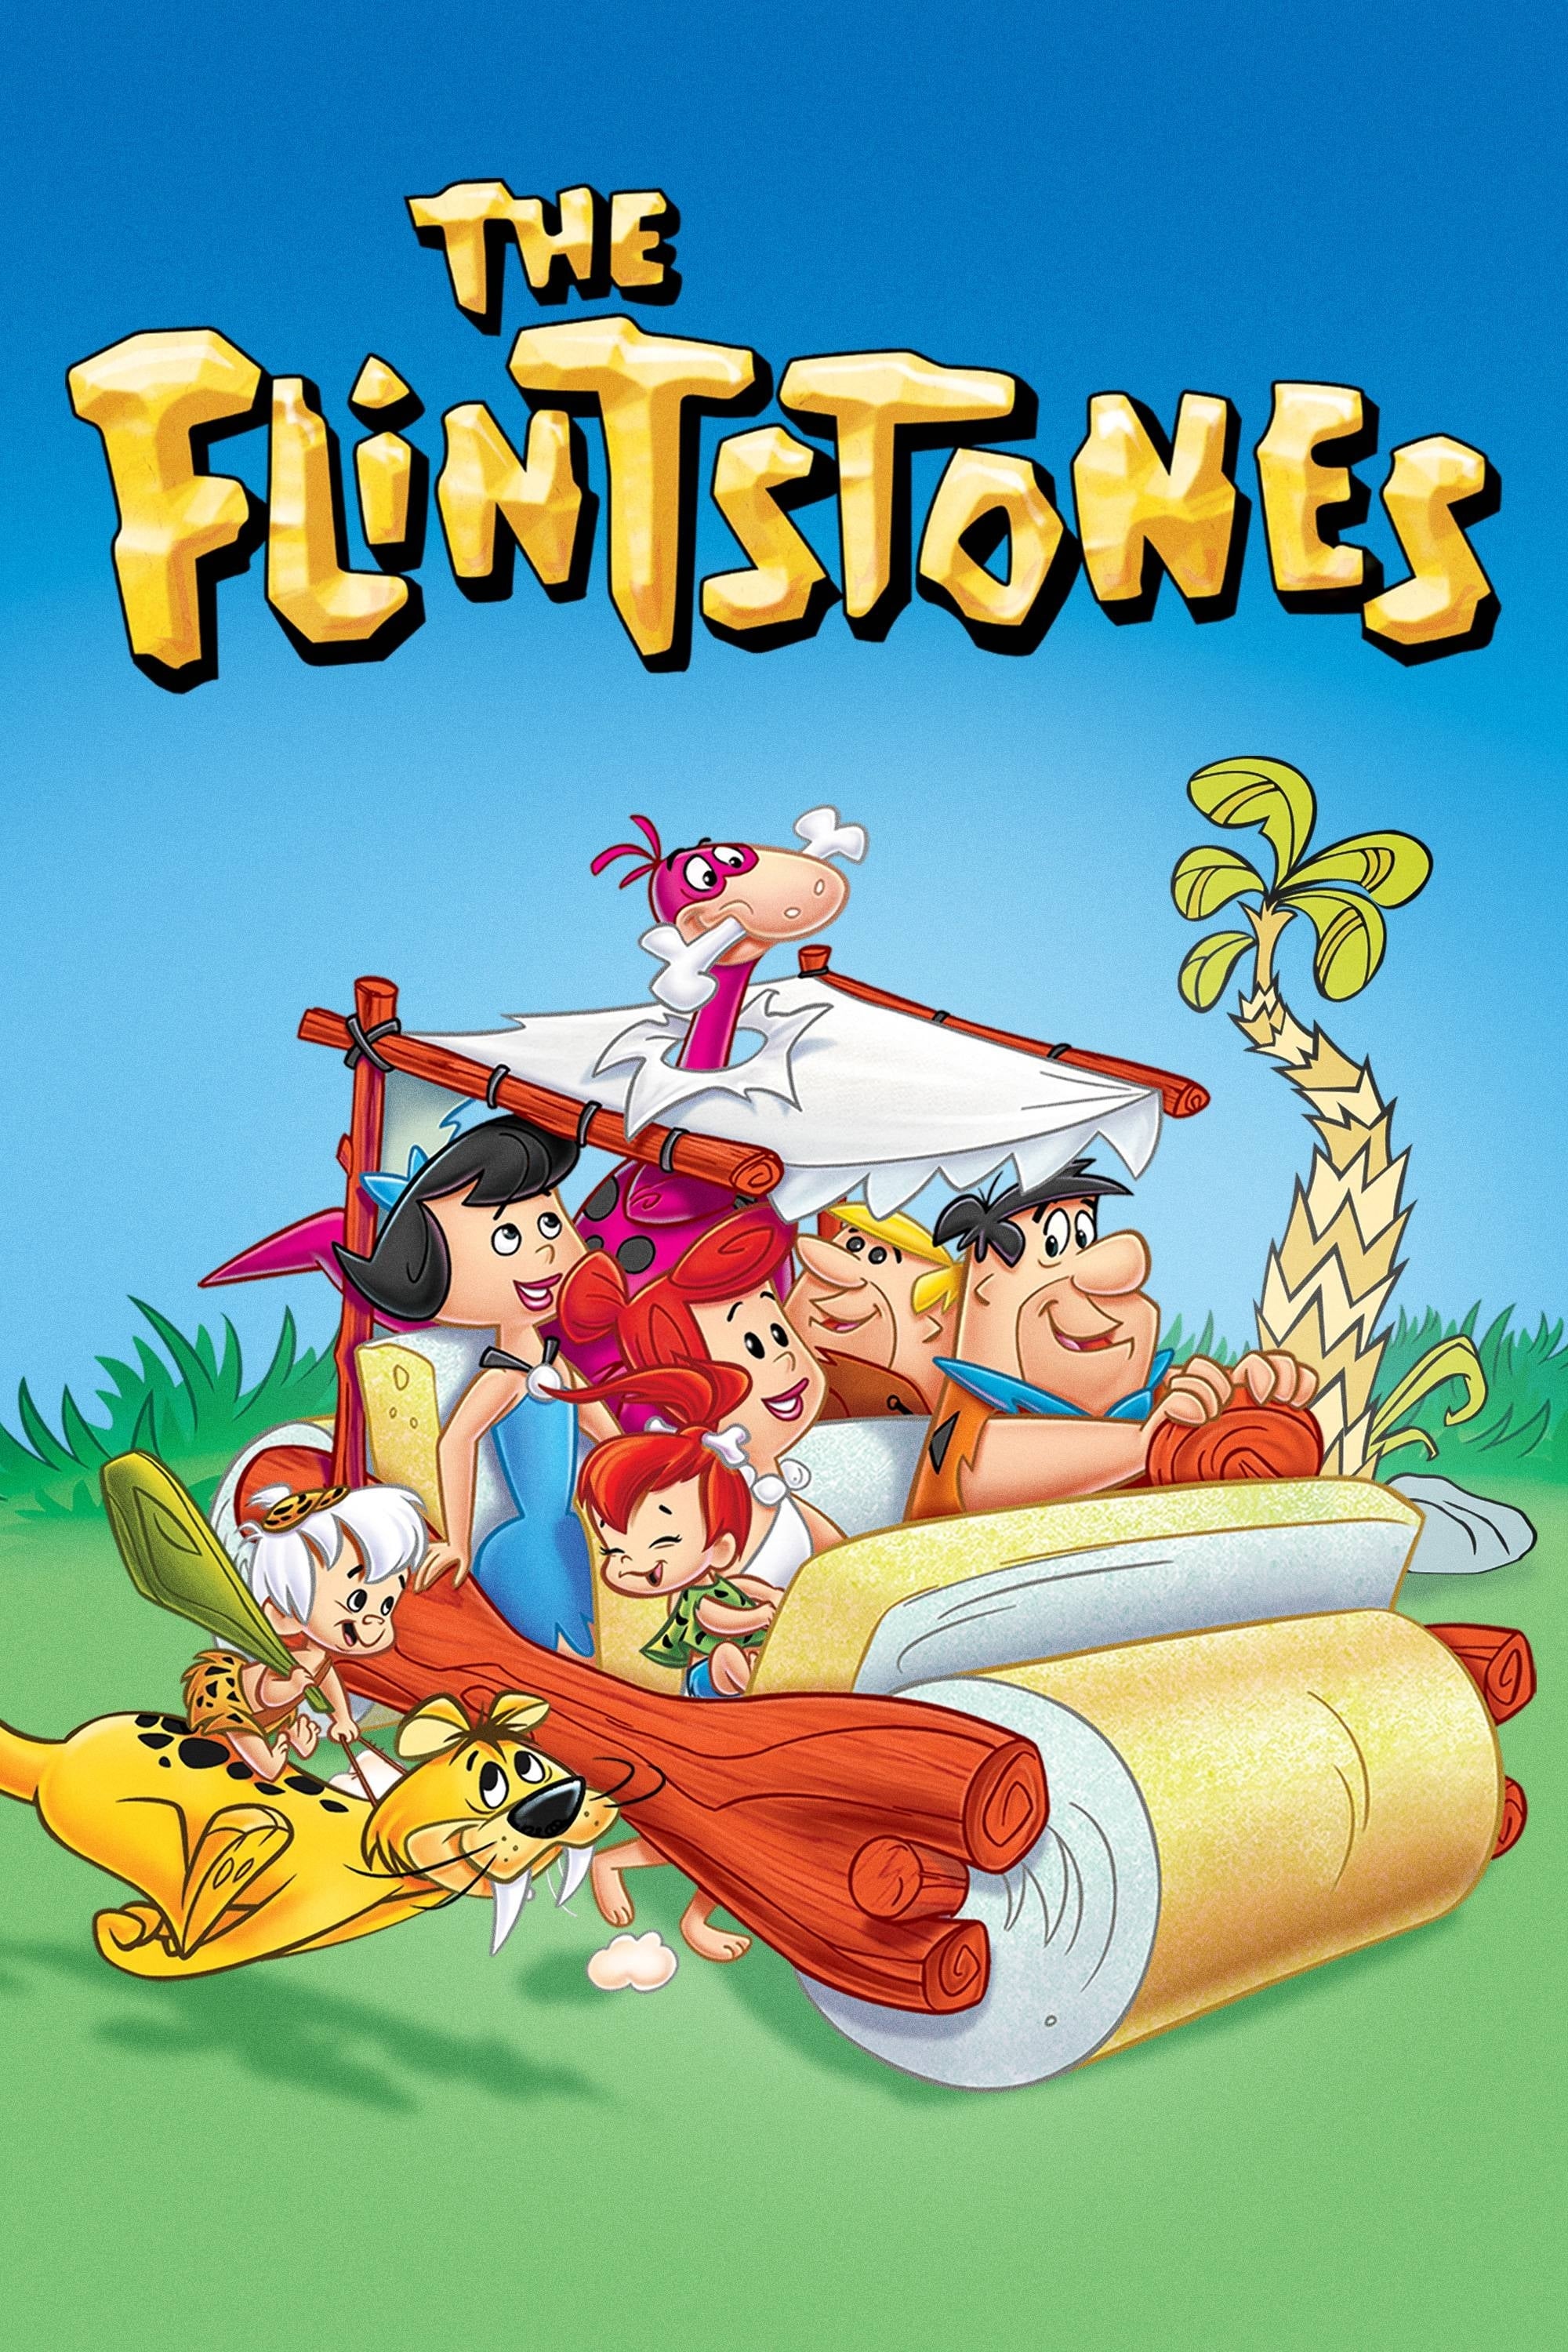 Os Flintstones